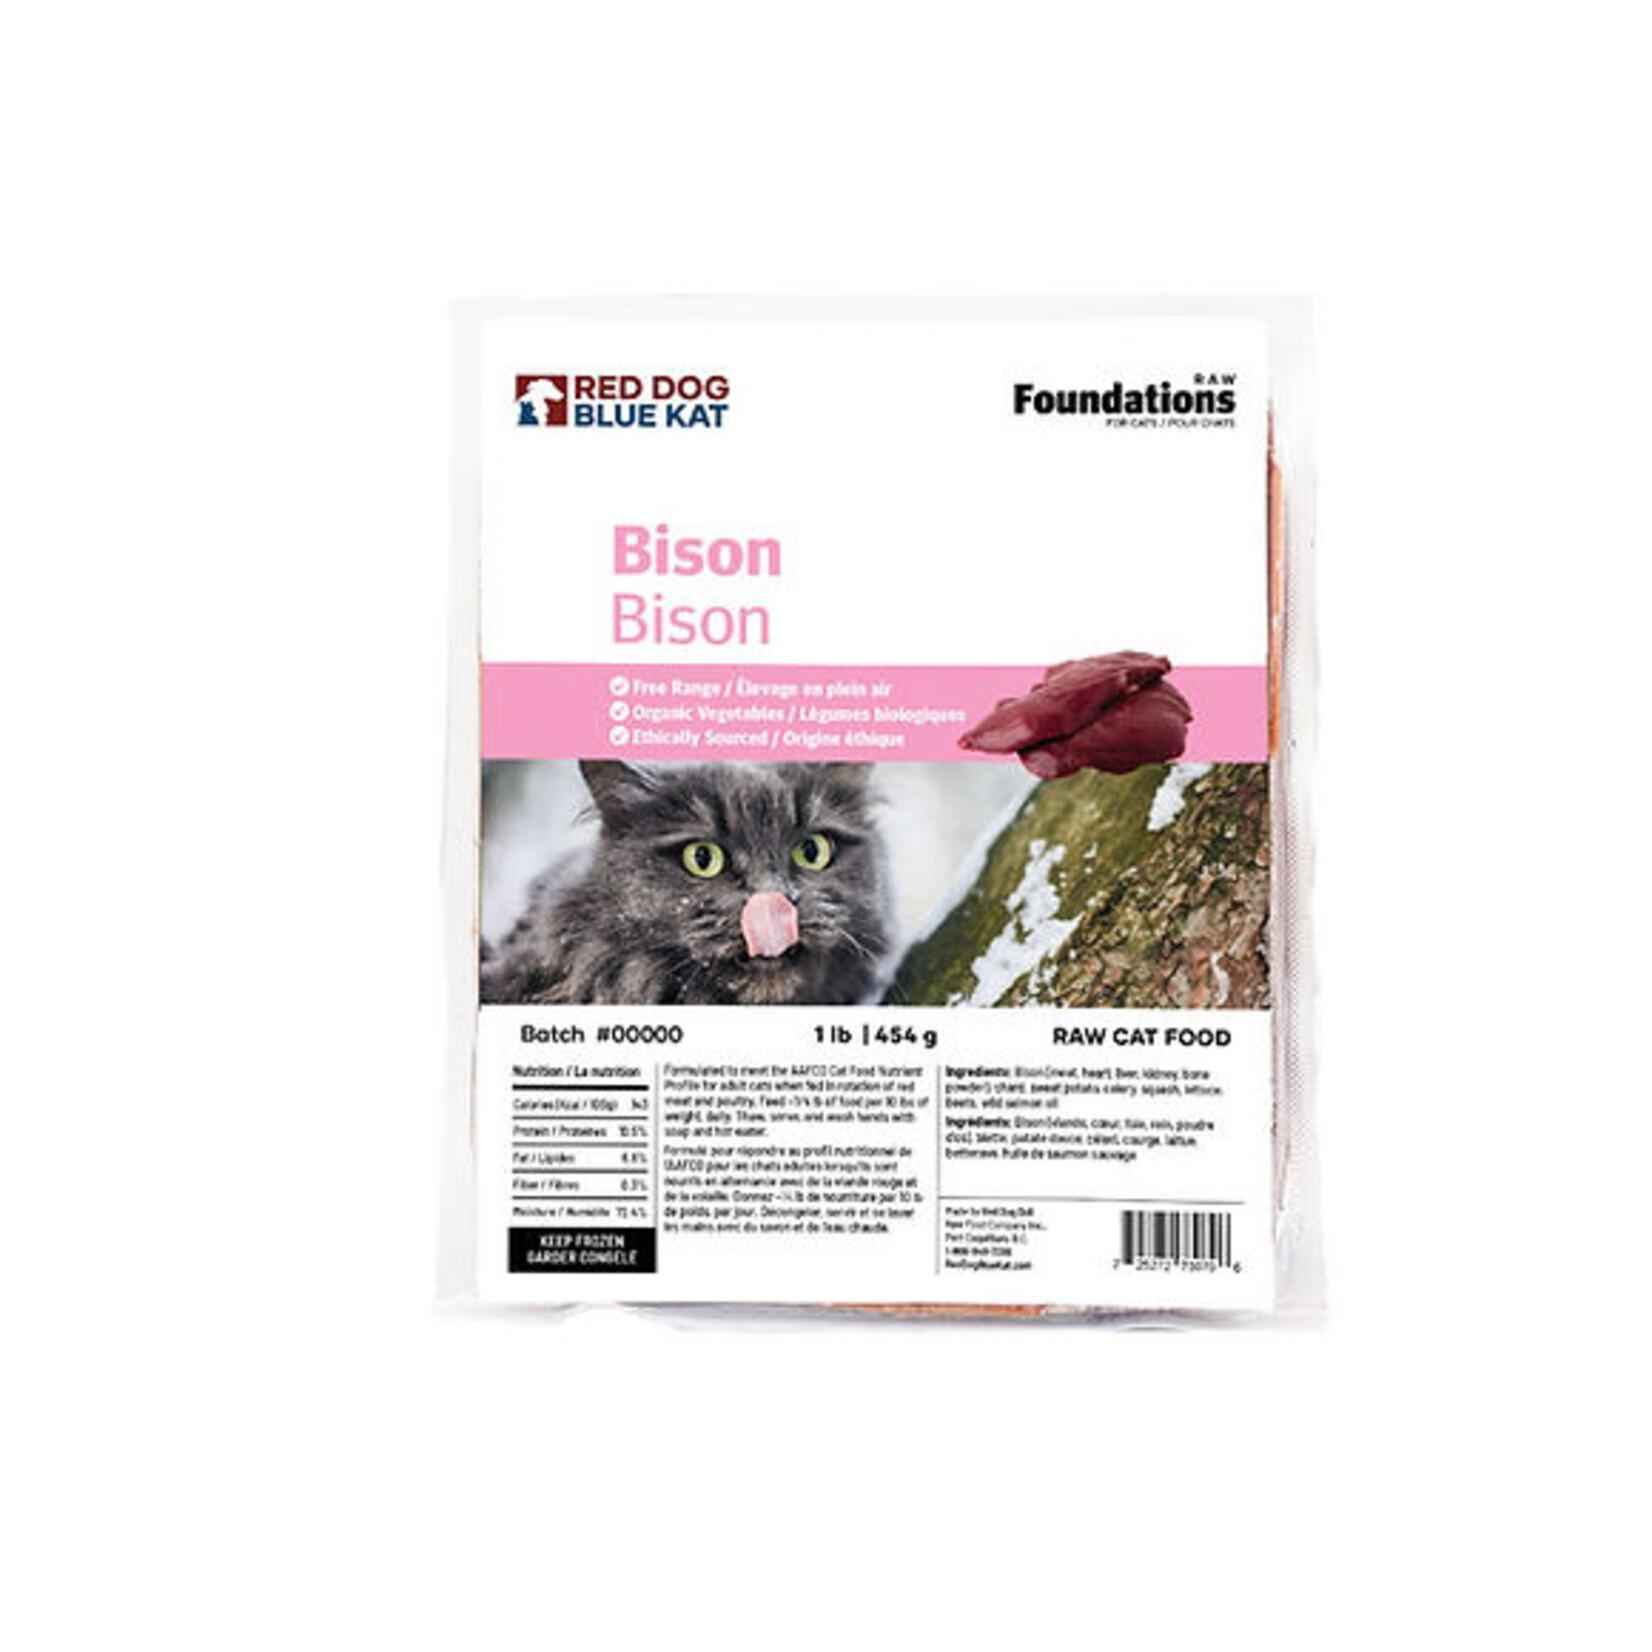 Red Dog Blue Kat RDBK Cat FOUNDATIONS Bison Recipe 4 1/4lb